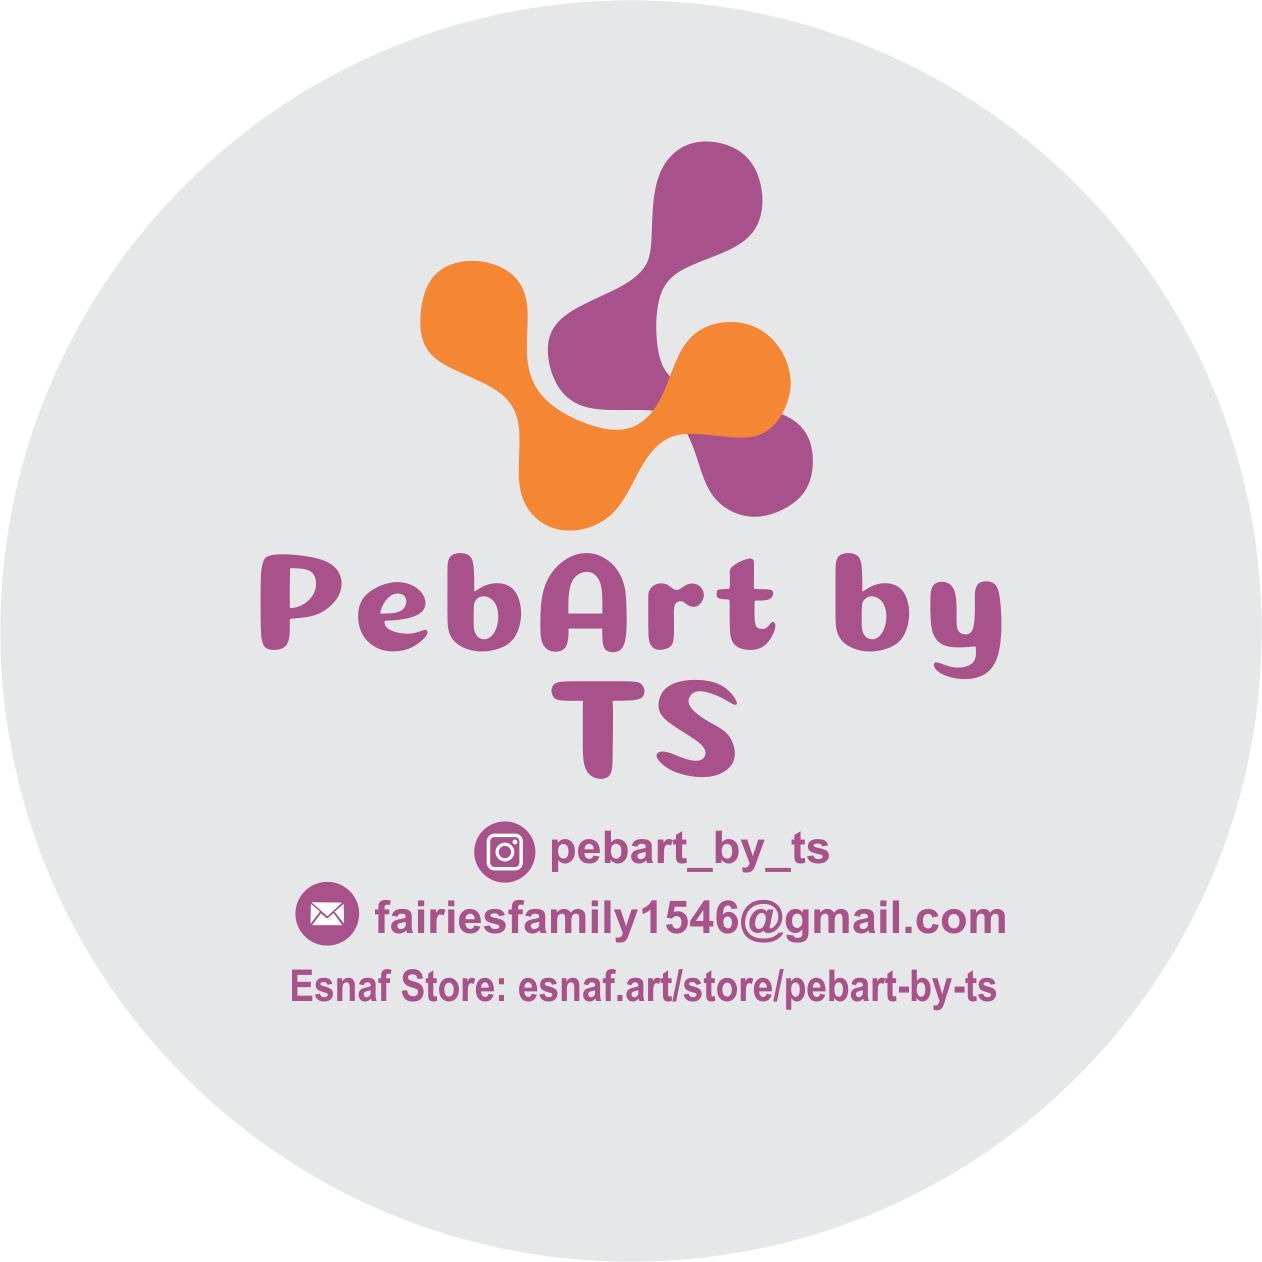 PebArt by TS